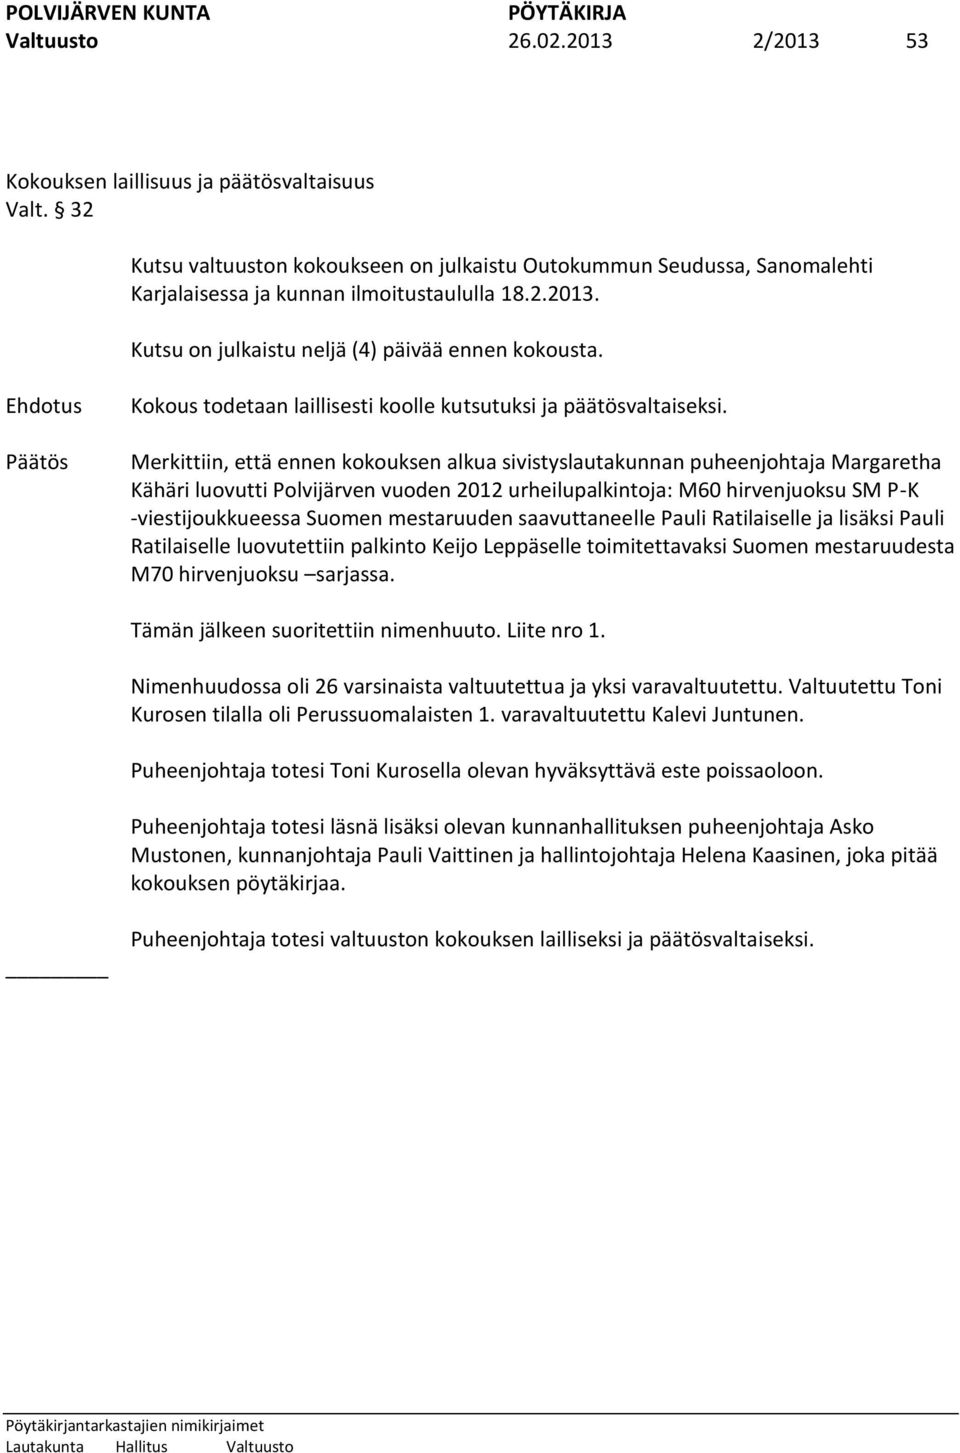 Merkittiin, että ennen kokouksen alkua sivistyslautakunnan puheenjohtaja Margaretha Kähäri luovutti Polvijärven vuoden 2012 urheilupalkintoja: M60 hirvenjuoksu SM P-K -viestijoukkueessa Suomen